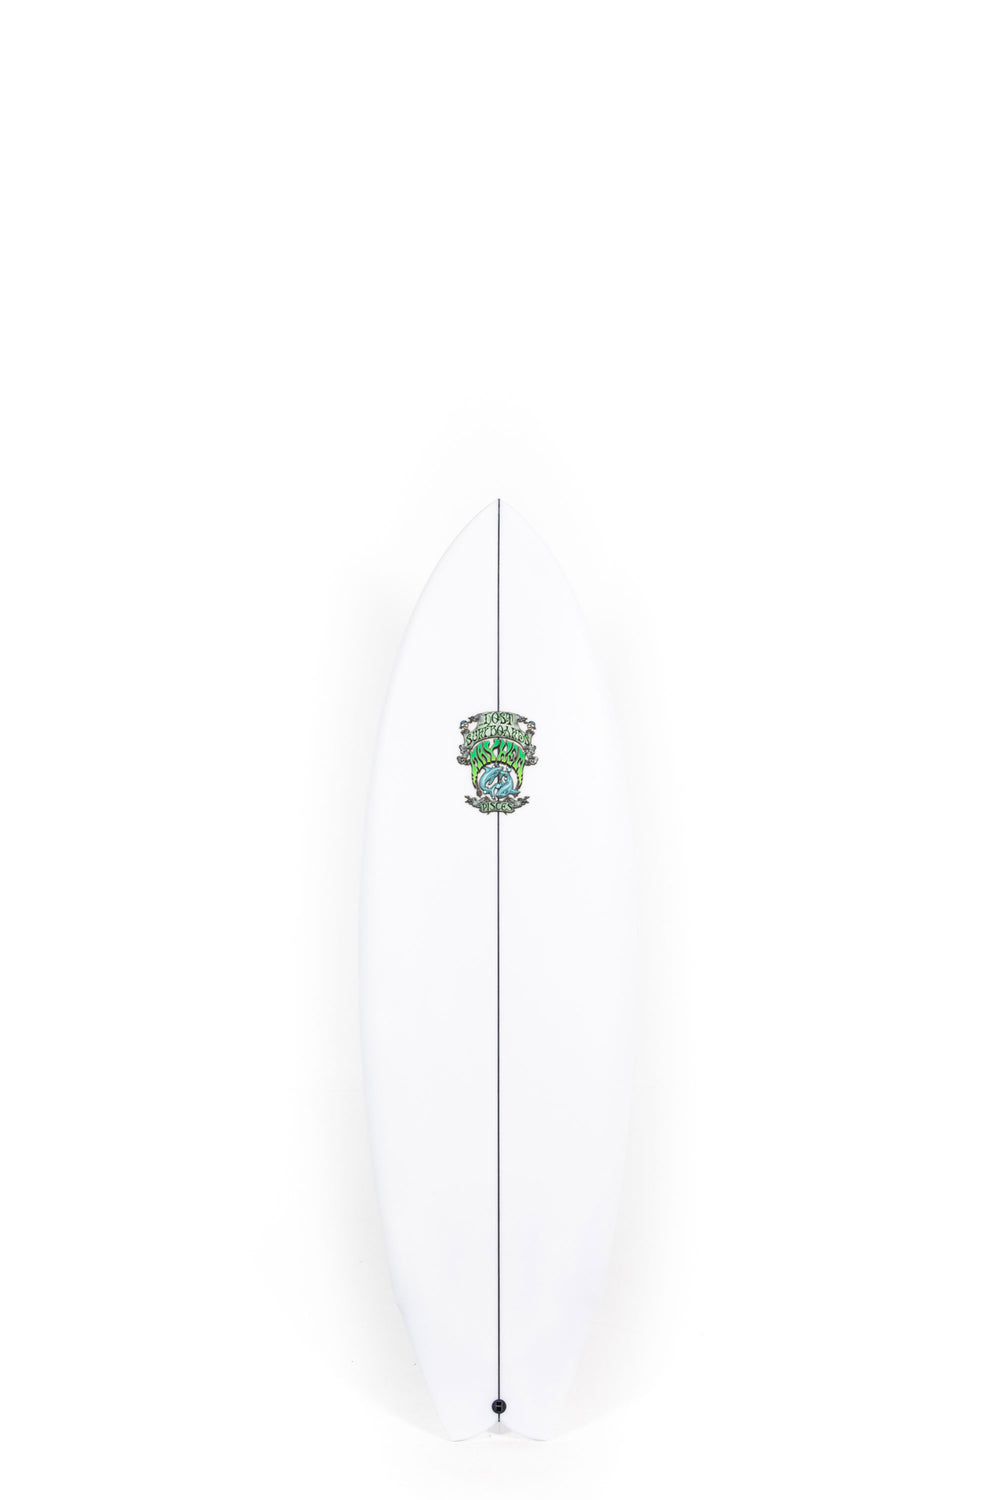 Lost Surfboard - PISCES by Matt Biolos - 5'9